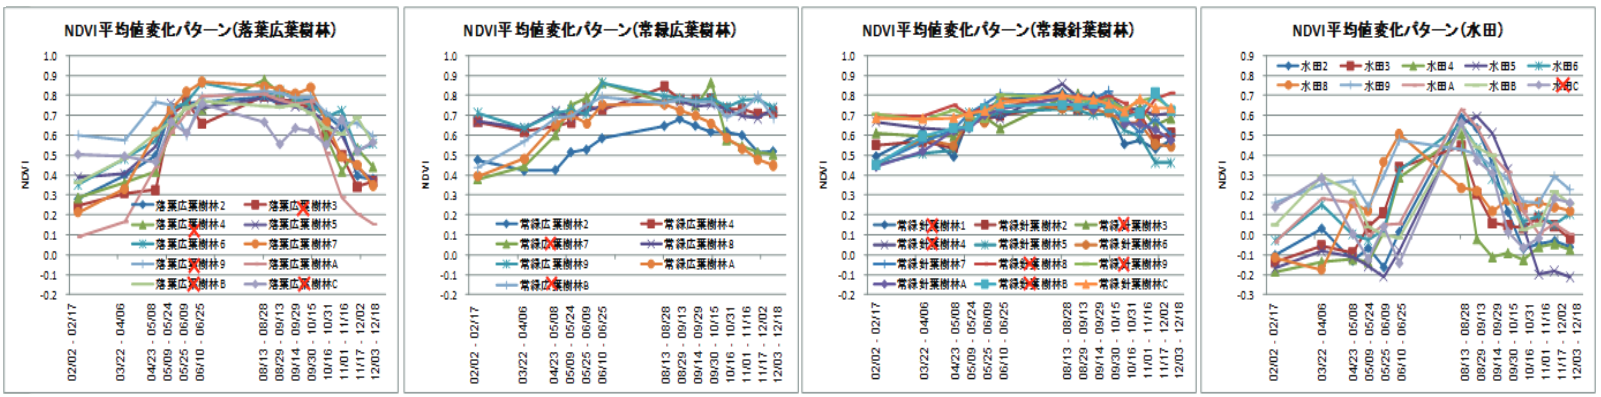 トレーニングデータによるNDVIの西日本の季節変化パターンの例の図